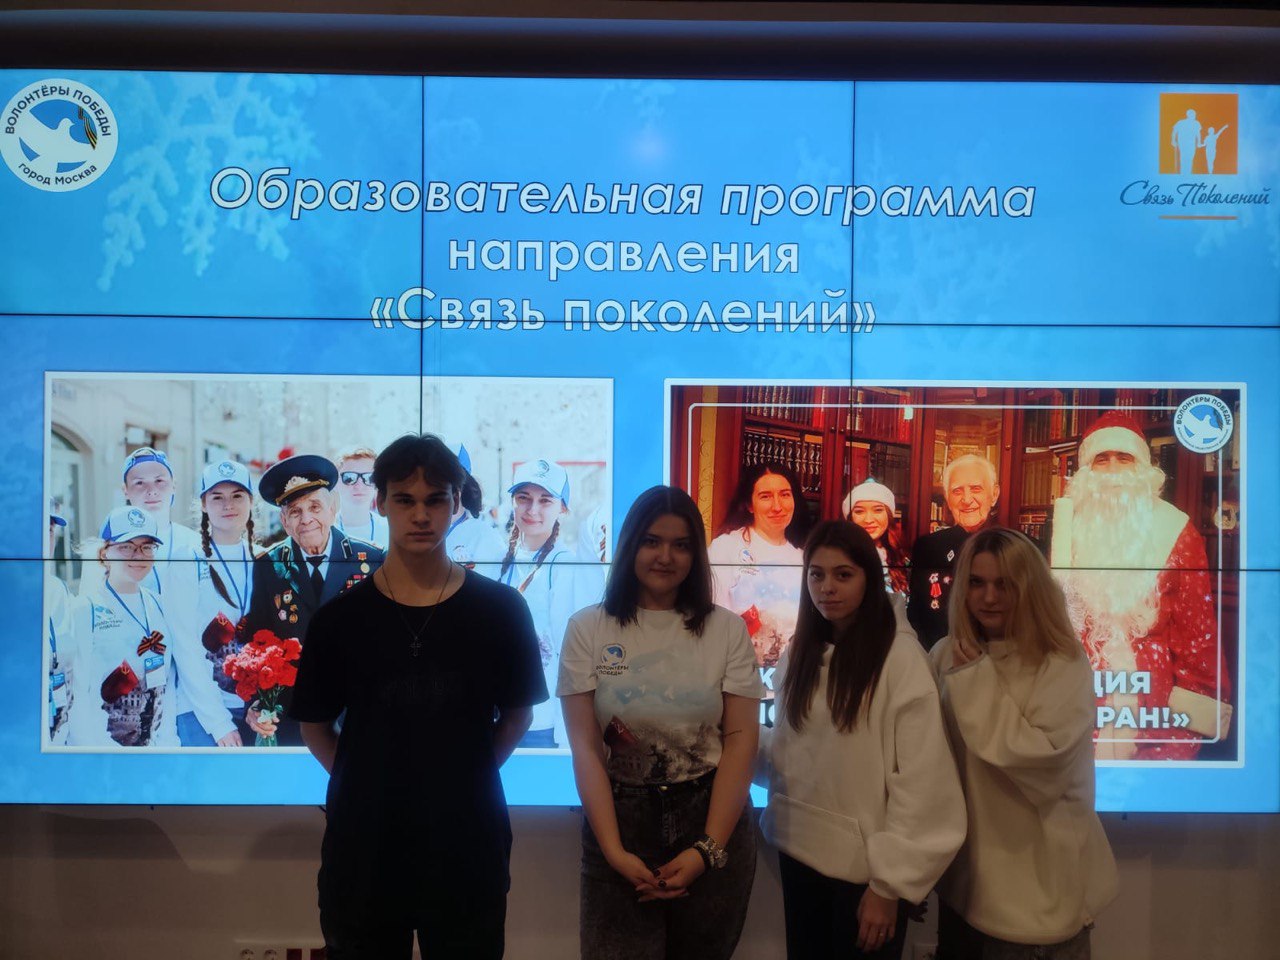 Всероссийское общественное движение “Волонтеры победы”